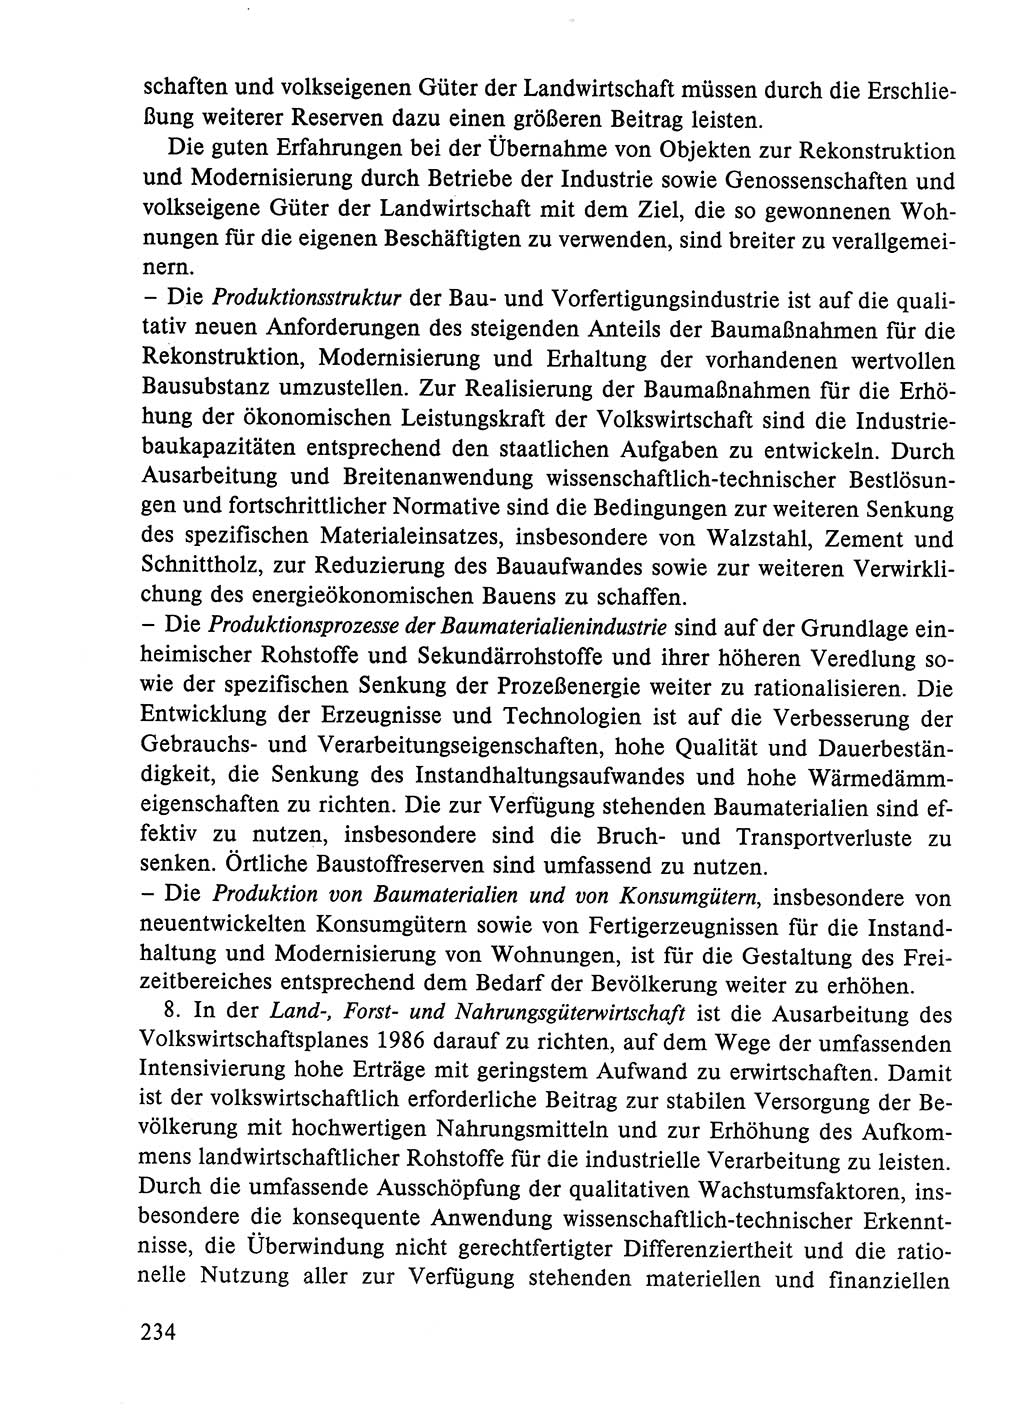 Dokumente der Sozialistischen Einheitspartei Deutschlands (SED) [Deutsche Demokratische Republik (DDR)] 1984-1985, Seite 193 (Dok. SED DDR 1984-1985, S. 193)